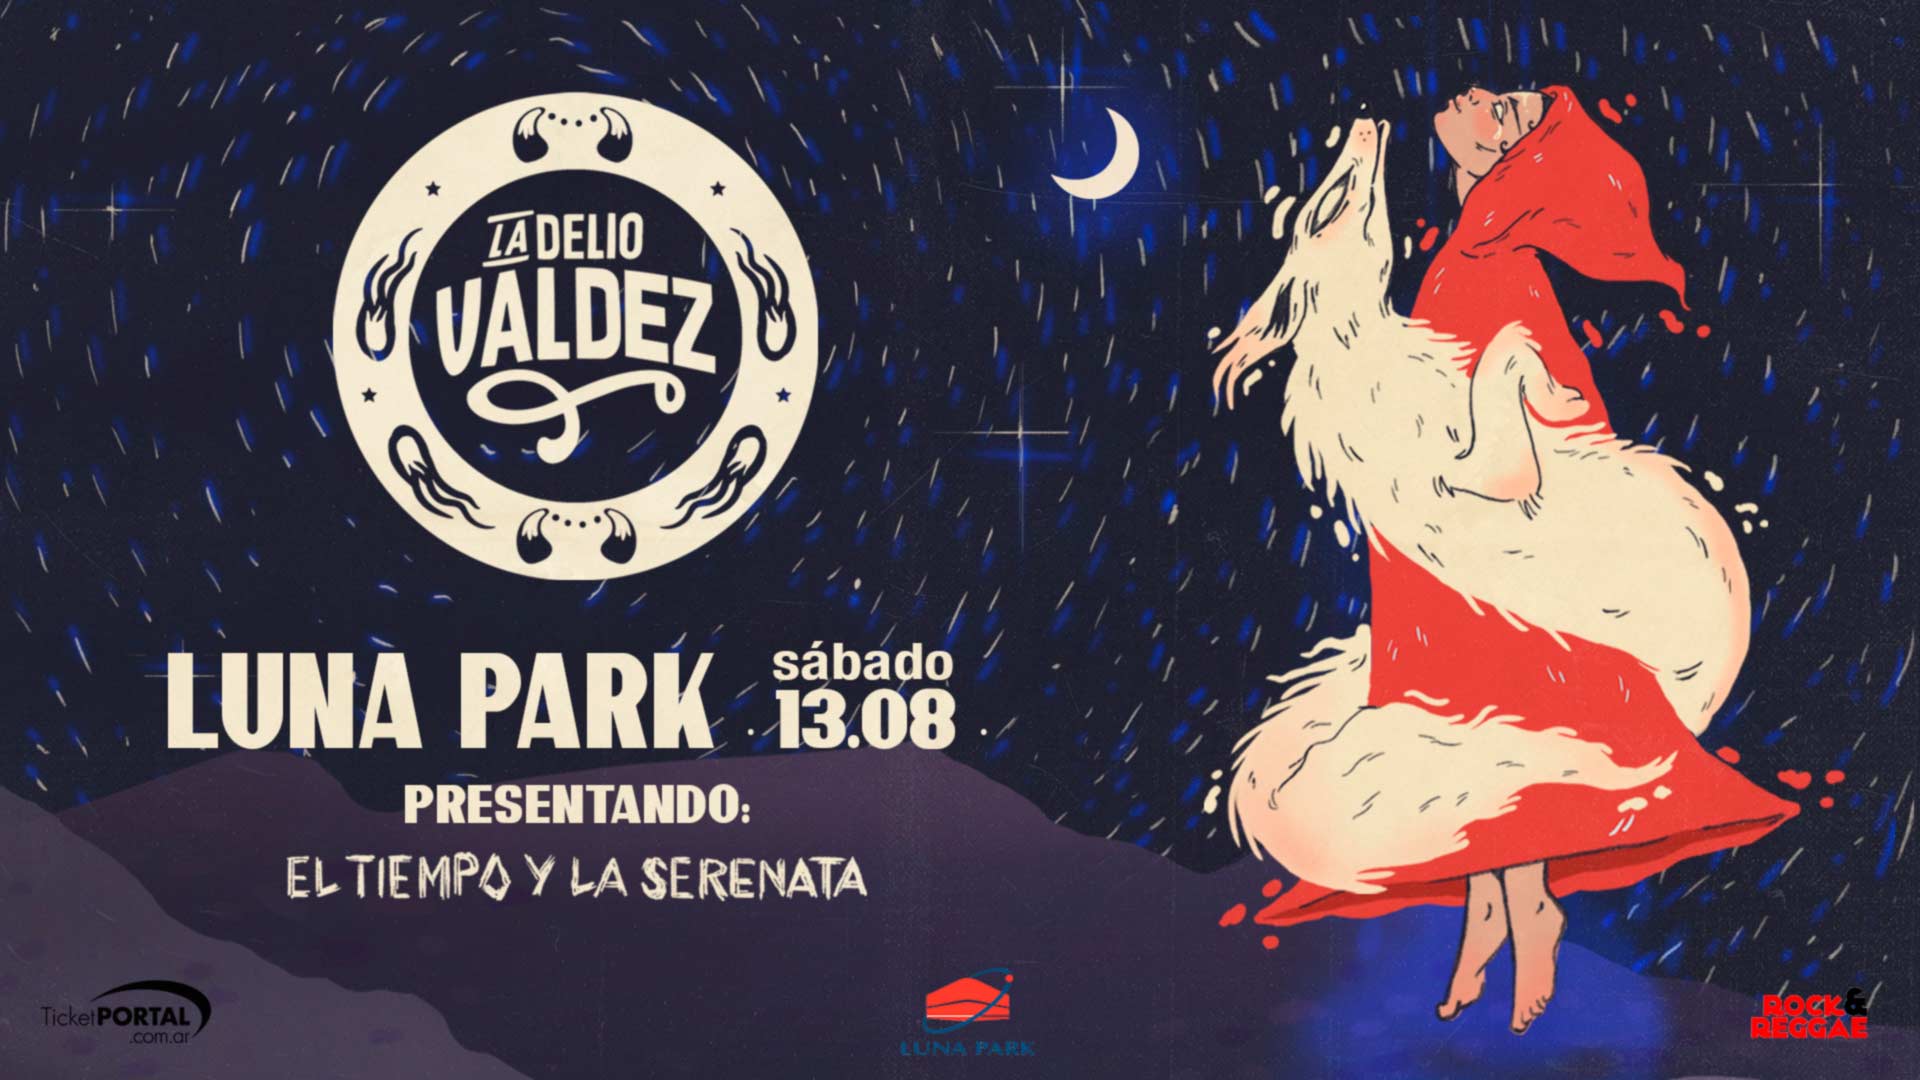 La Delio Valdez en el Luna Park